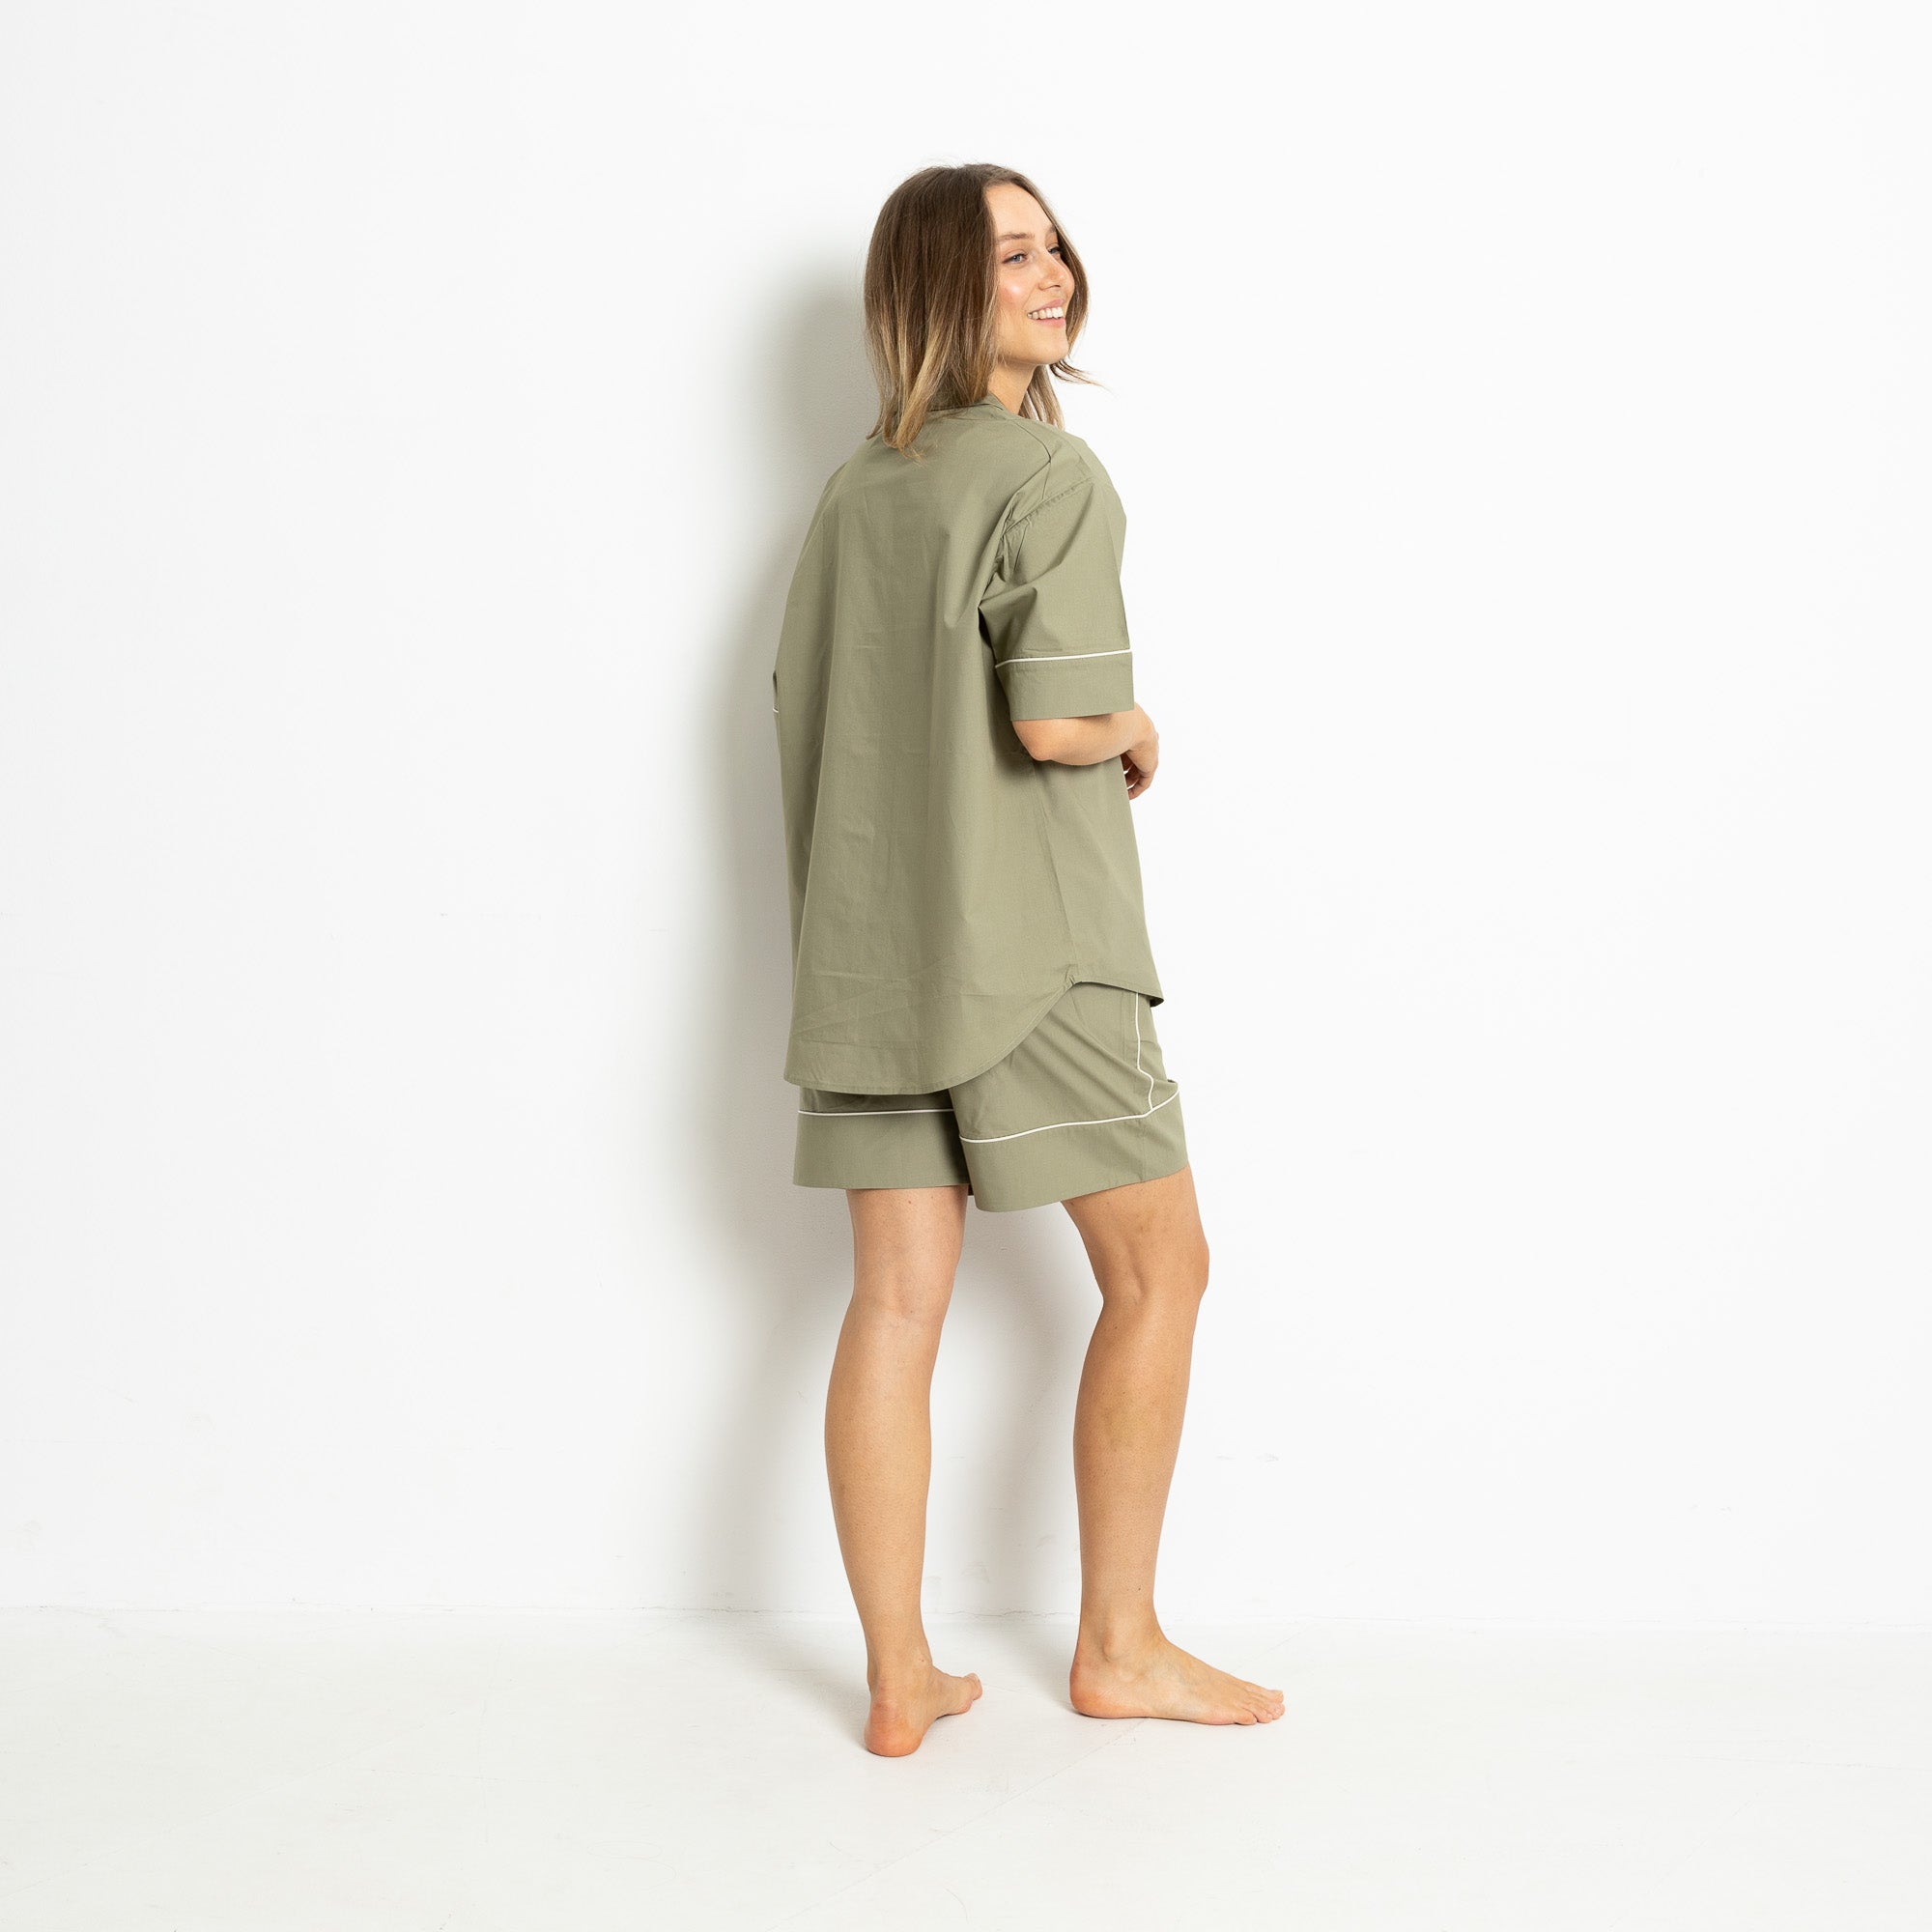 Pyjama Set (Shorts + Shirt short sleeve) - solid pale olive - VIVI MARI